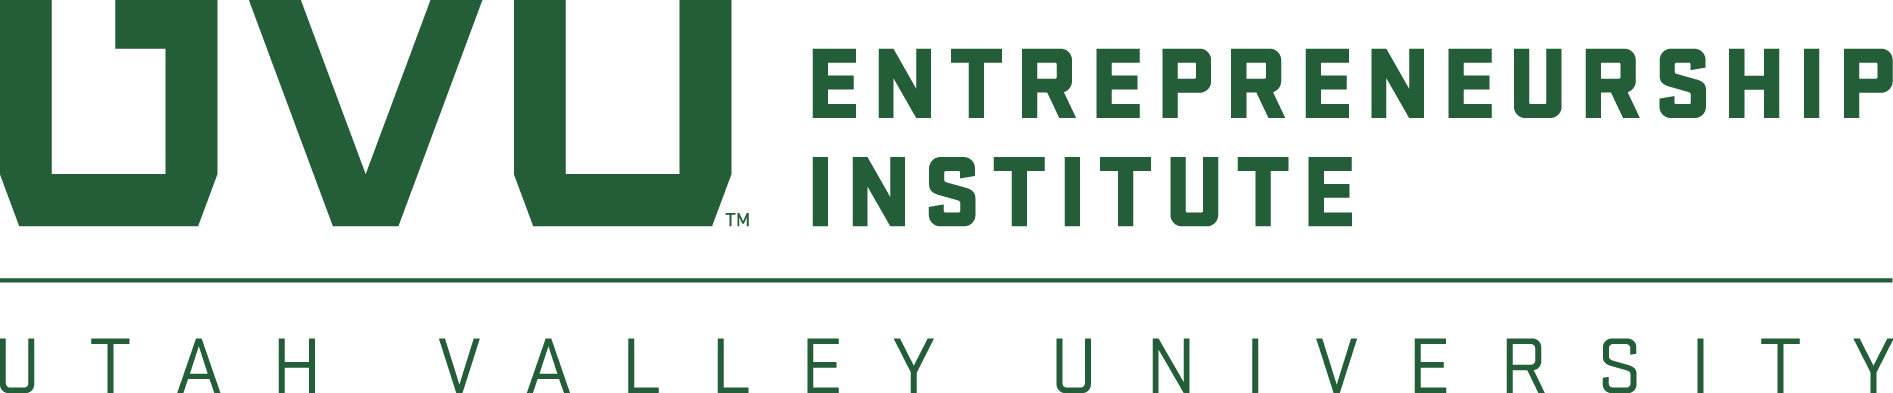 UVU Entrepreneurship Institute